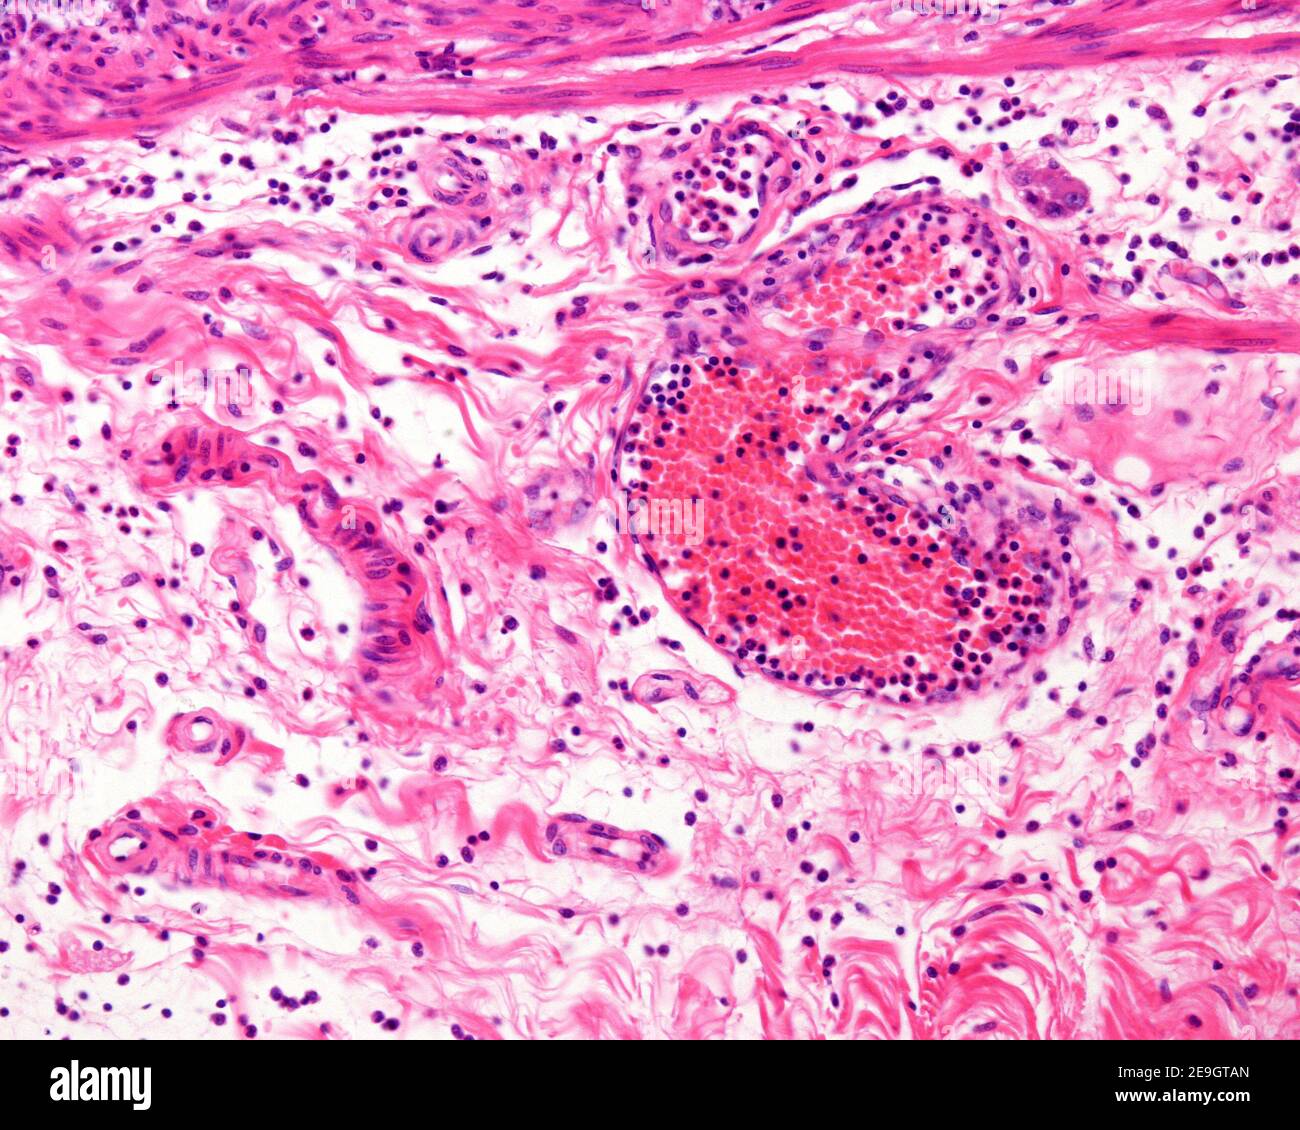 Vaisseau sanguin avec des leucocytes abondants dans la sous-muqueuse d'un diverticule enflammé de Meckel. Le tissu conjonctif montre également de nombreuses cellules inflammatoires. Banque D'Images